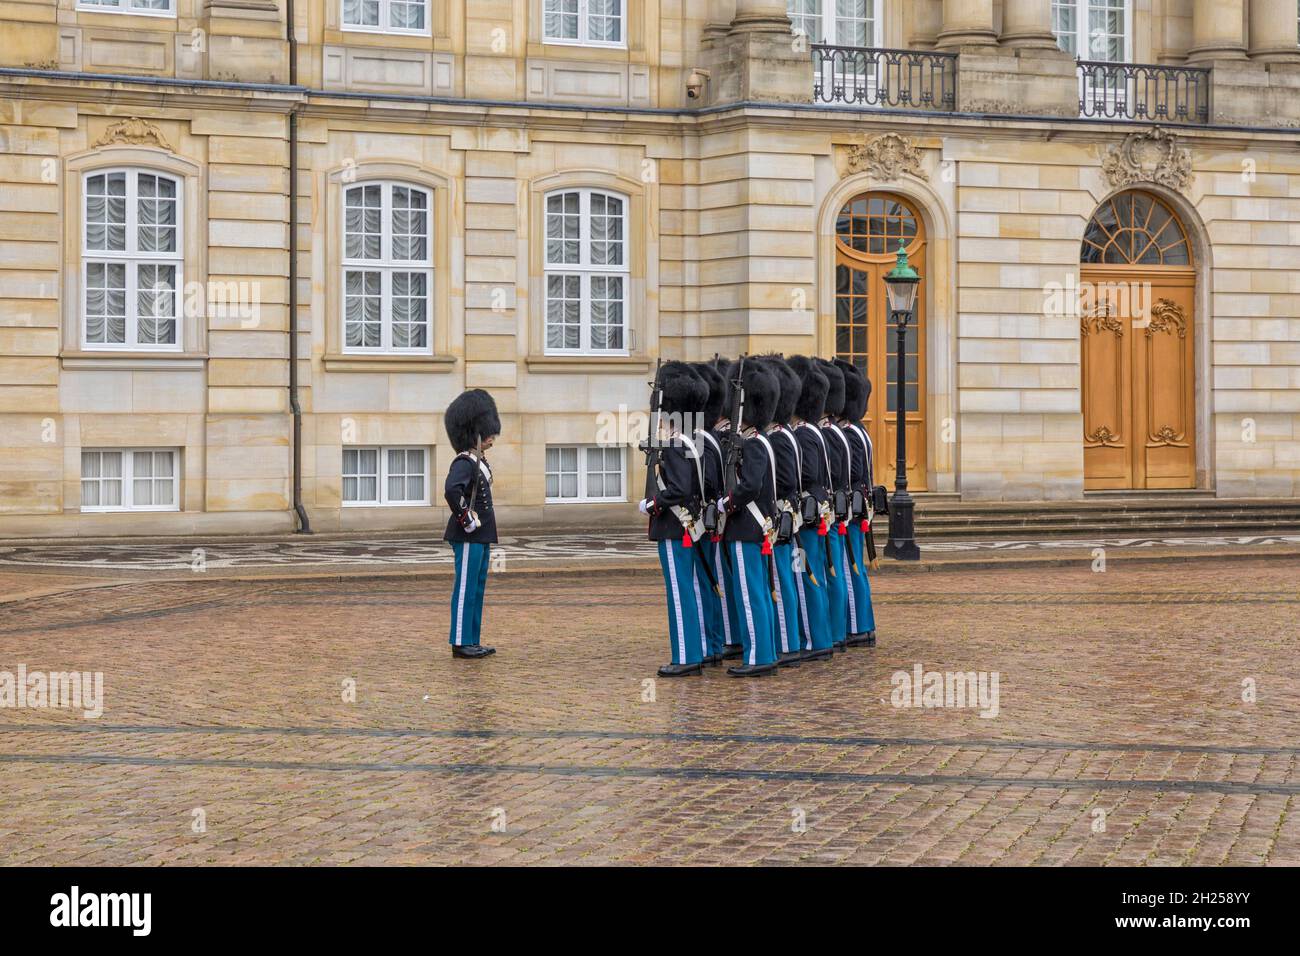 Copenhague, Danemark, le 21 septembre 2021 : transformation traditionnelle des gardes à midi devant le palais royal d'Amalienborg. Banque D'Images